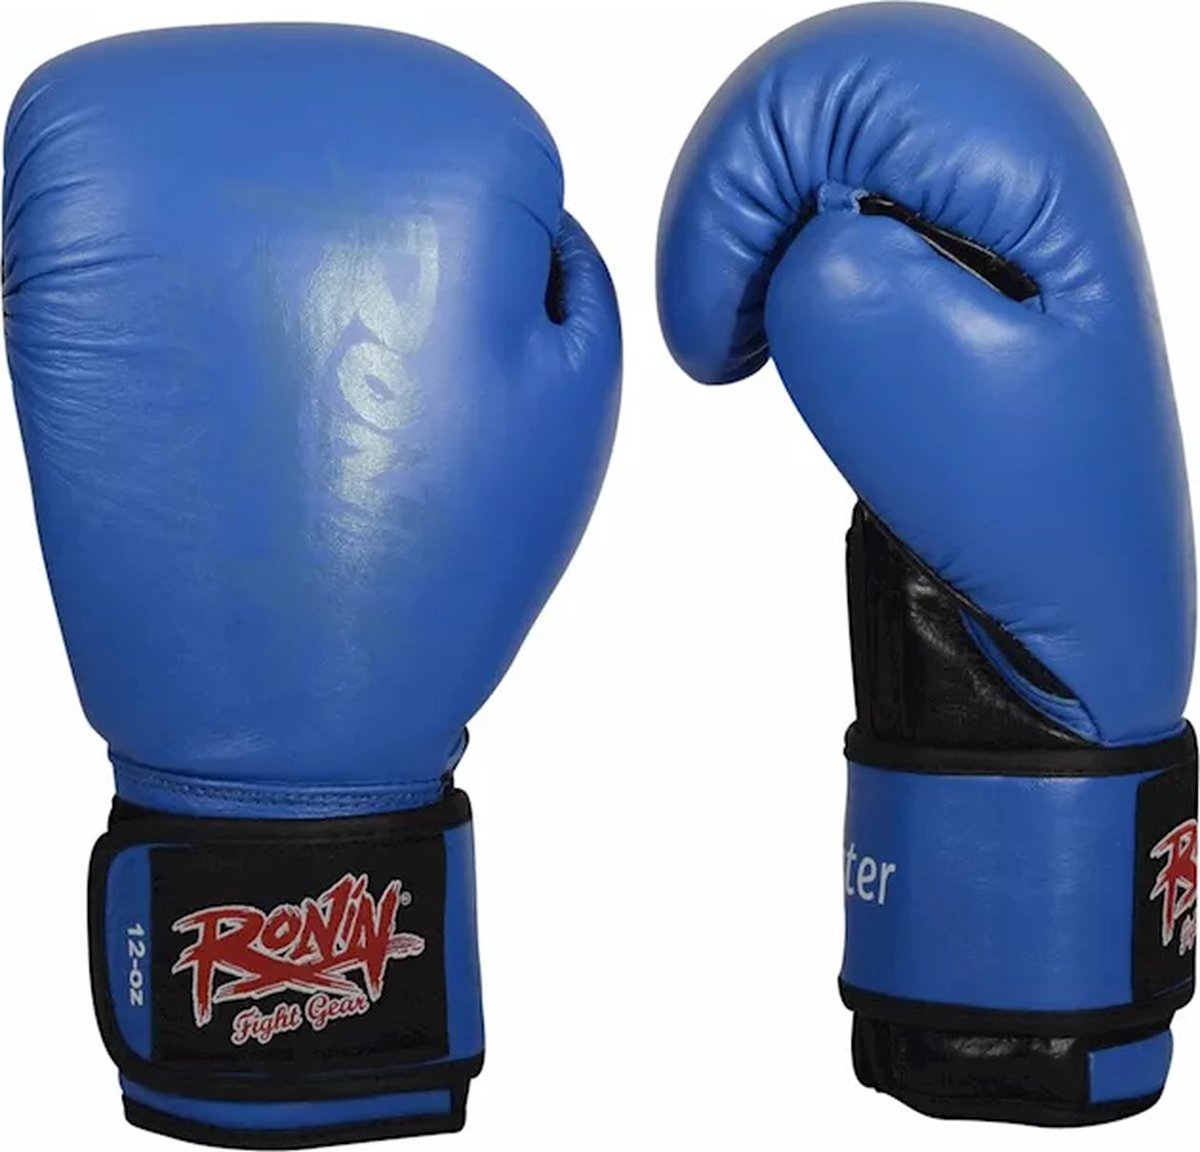 Ronin Fighter Bokshandschoen blauw/zwart 10oz